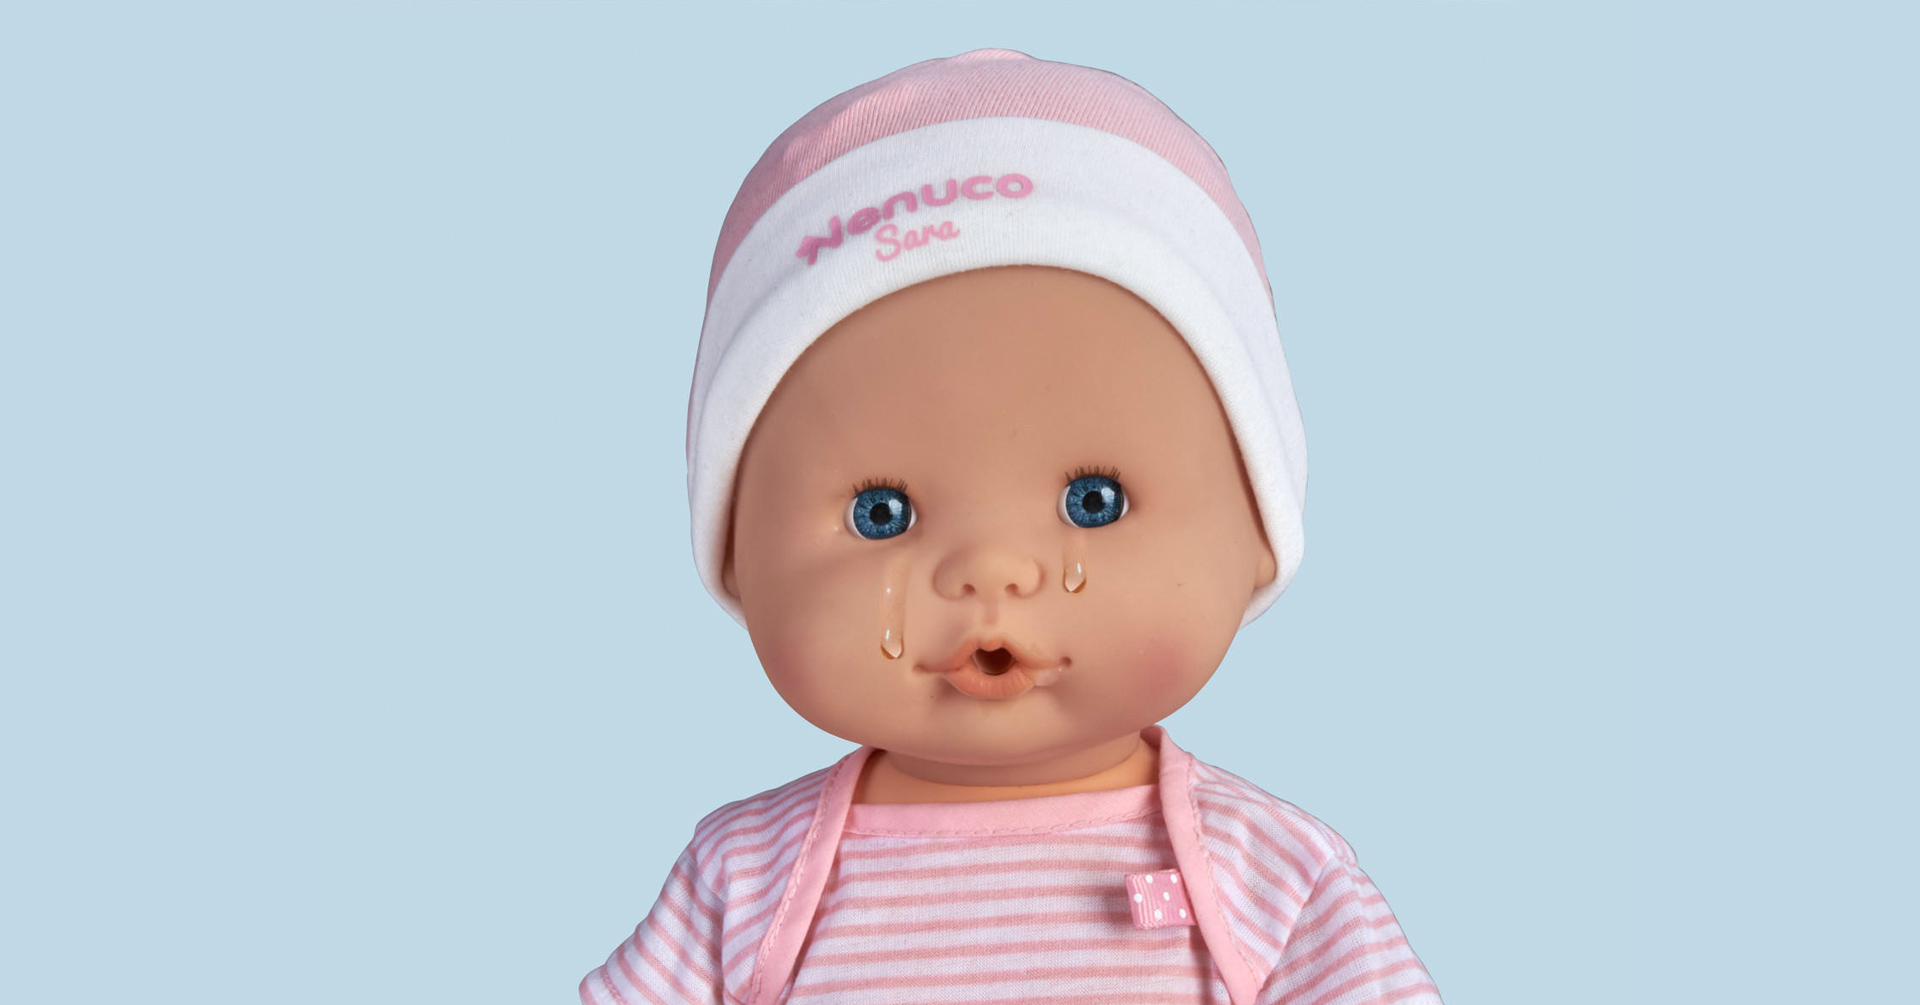 日本初上陸 ヨーロッパで30万個の大ヒット お人形から甘い香り 手がかかりすぎる赤ちゃん人形 スペイン発 ネヌコ Nenuco サラちゃん 本日より販売開始 Uchima Tradingのプレスリリース